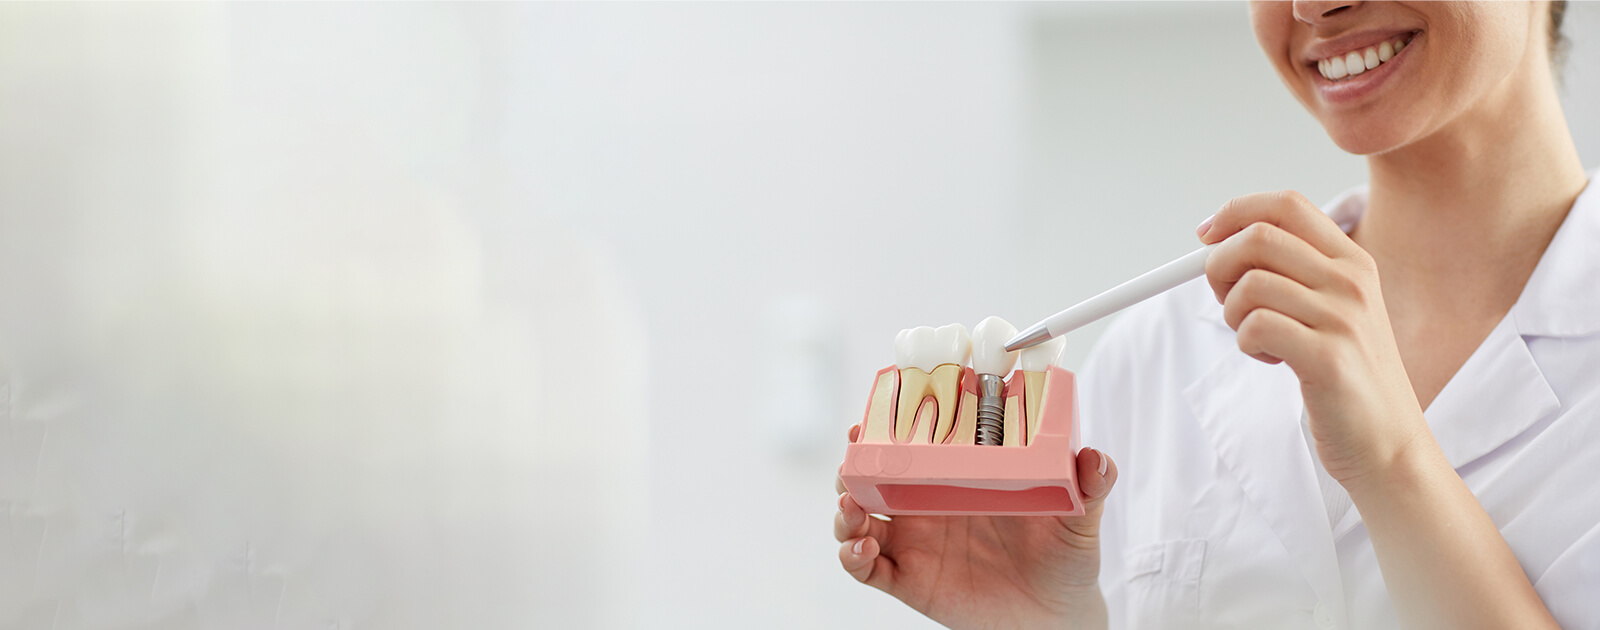 Zahnimplantat: Kosten und Behandlung im Überblick